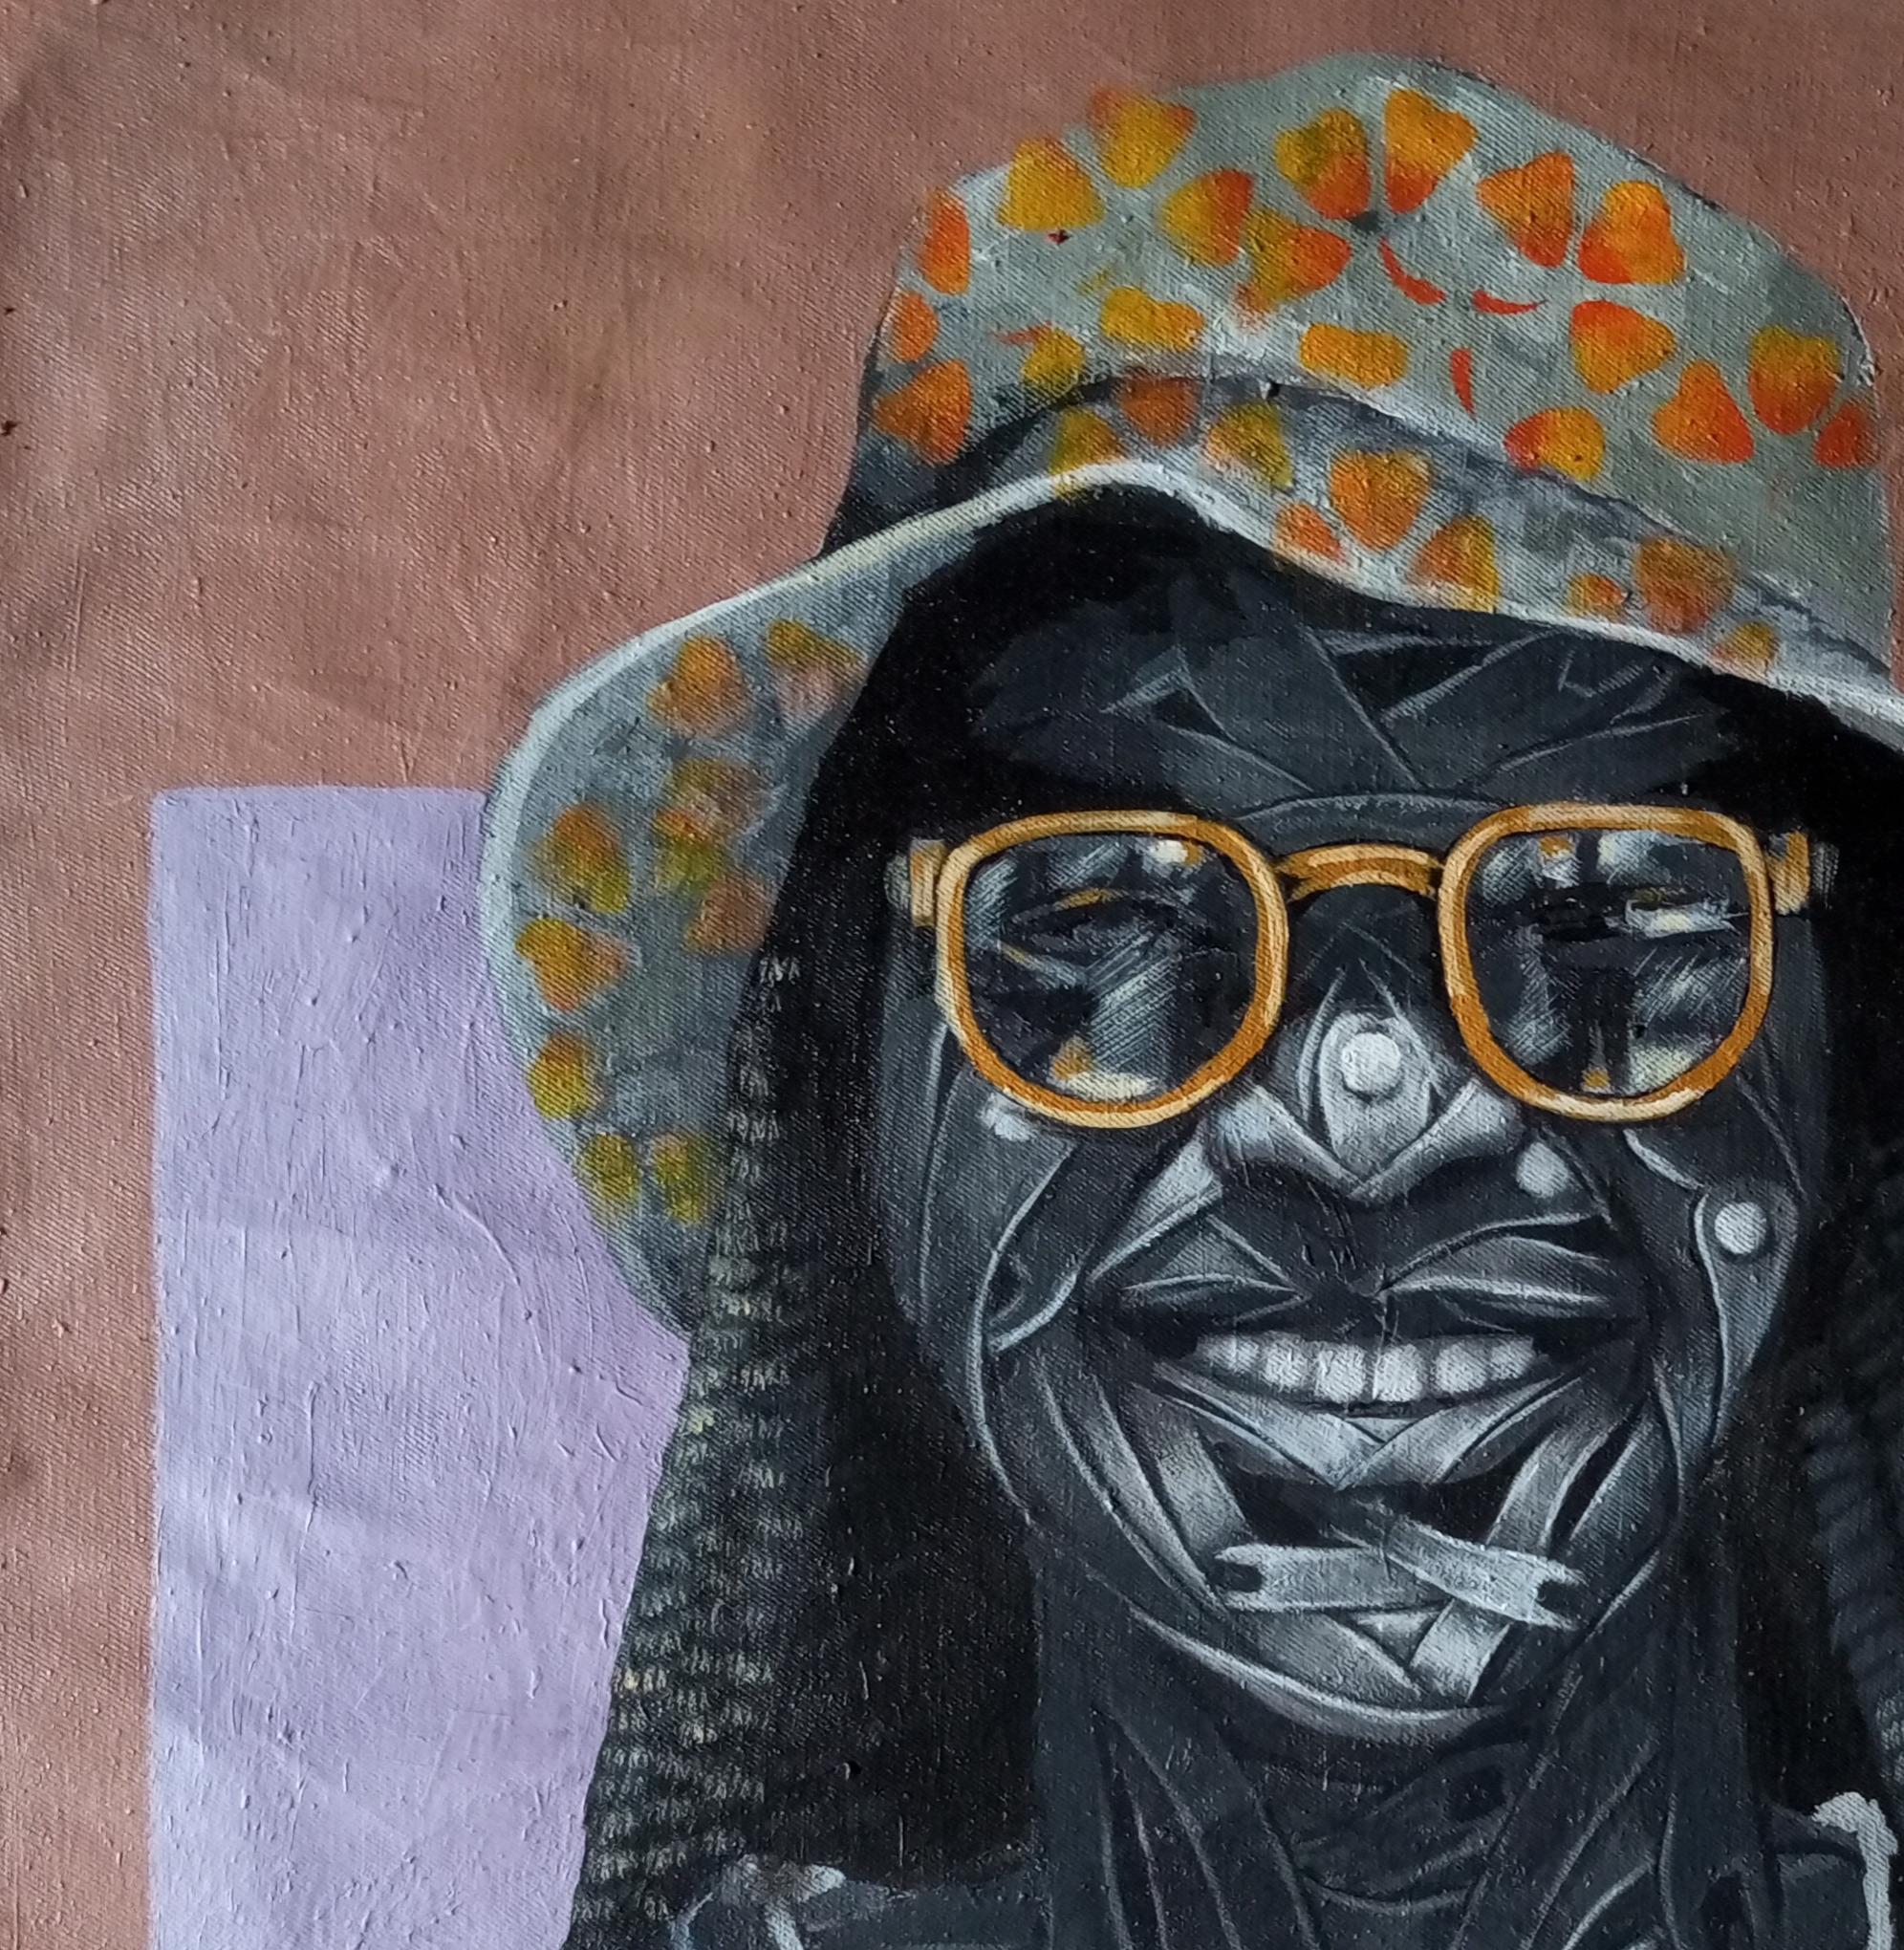 Olajumoke (Kinder des Reichtums, das alle schätzen) – Painting von  Ayanwale Joseph Oluwafemi 